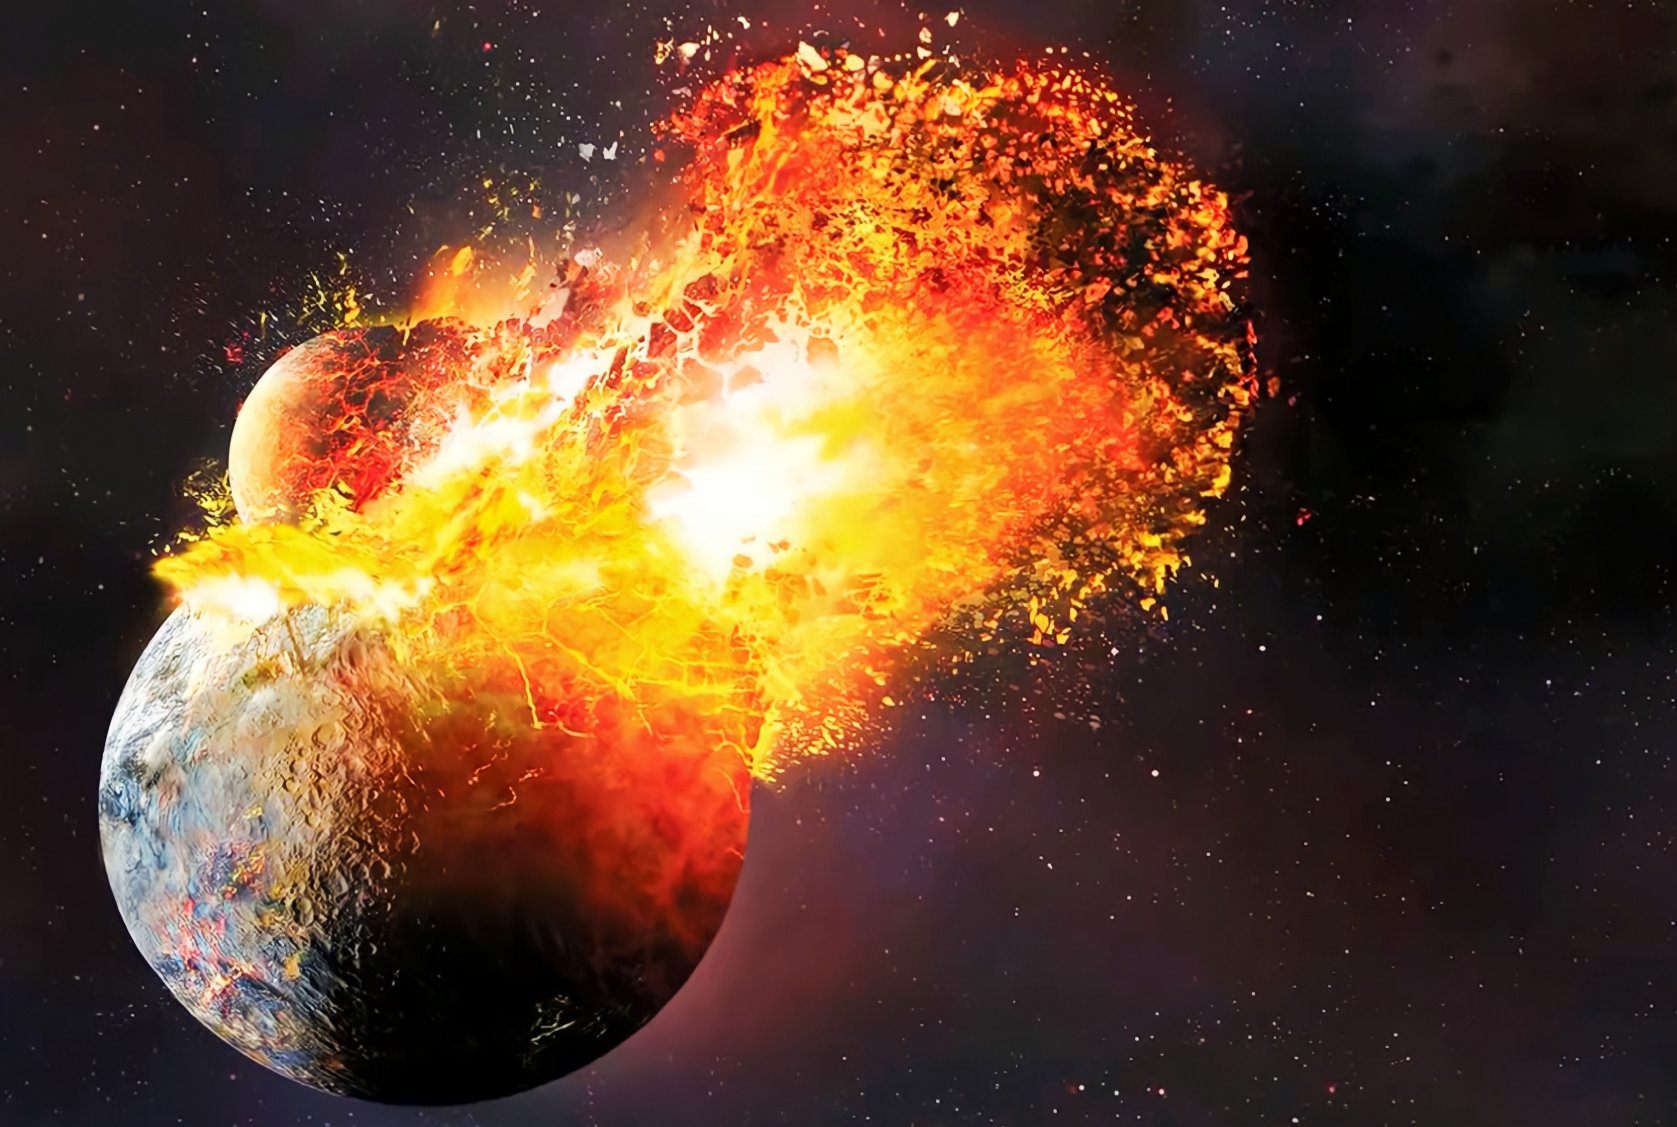 चन्द्रमामा पृथ्वीबाट ४ अर्ब वर्ष पुरानो चट्टान भेटियो: के भन्छन् सिद्धान्तकार ? २